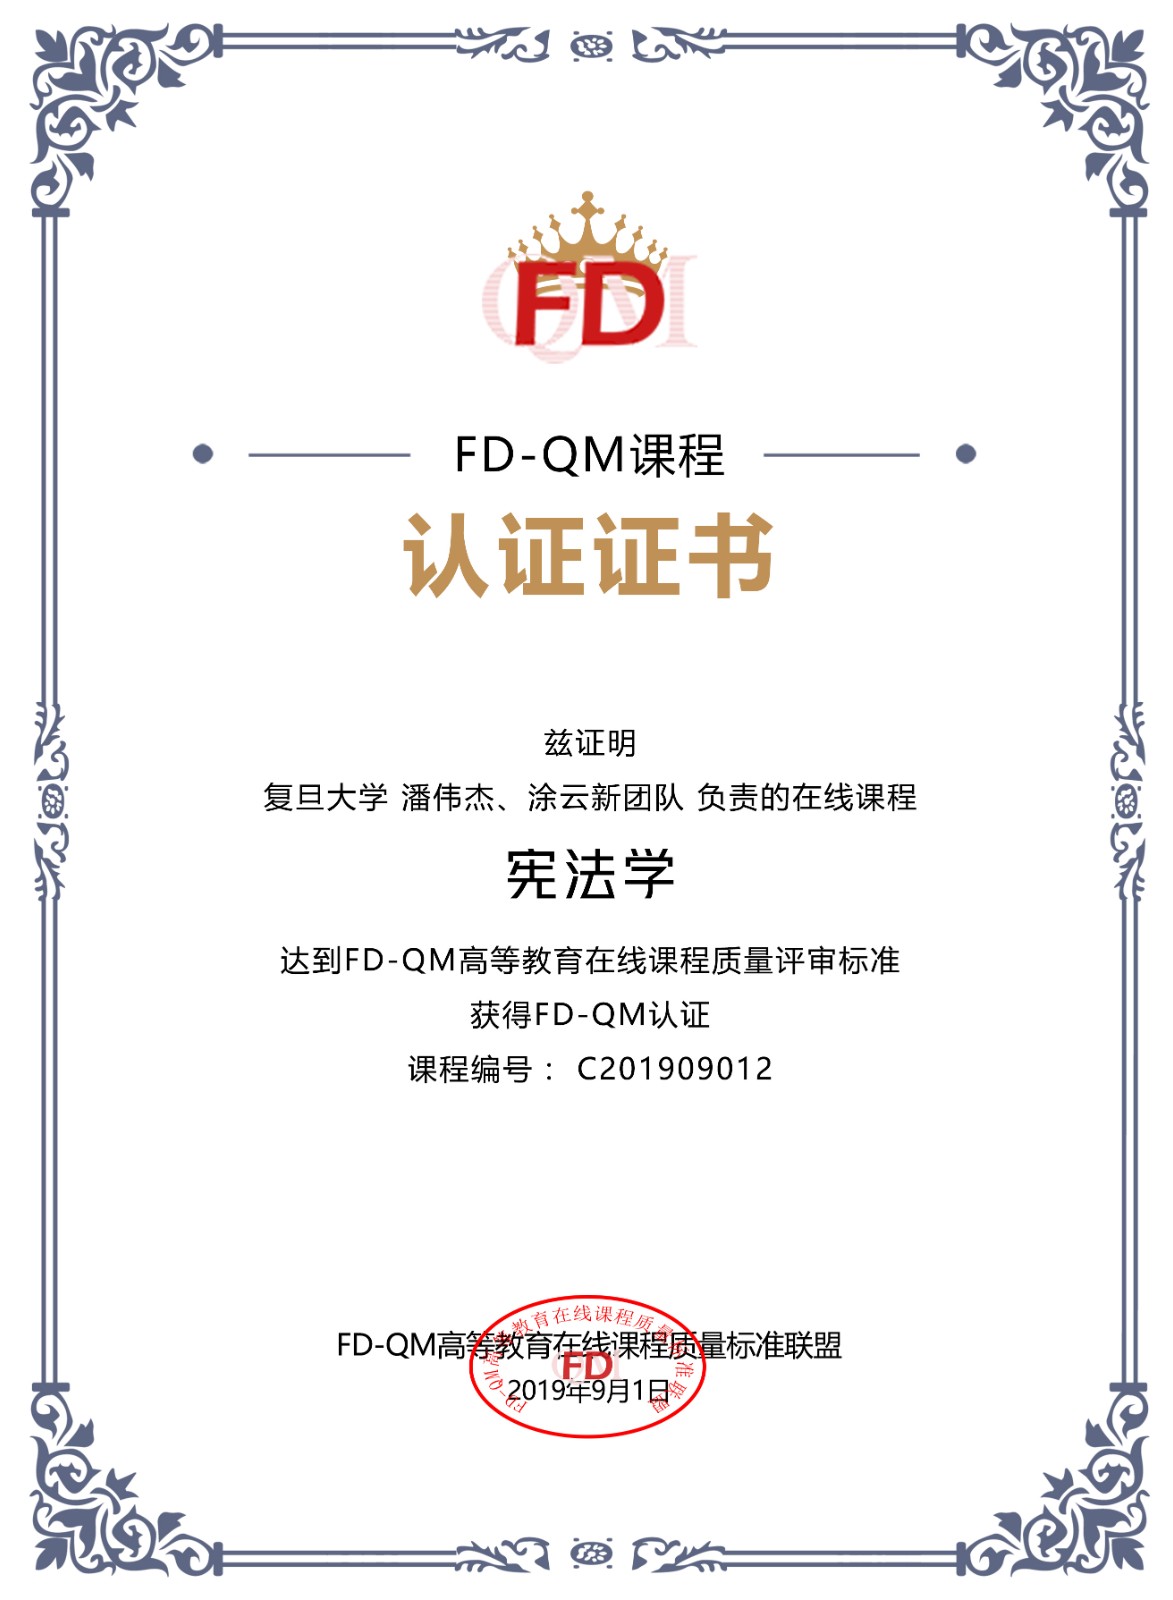 FD-QM课程证书-潘伟杰.jpg